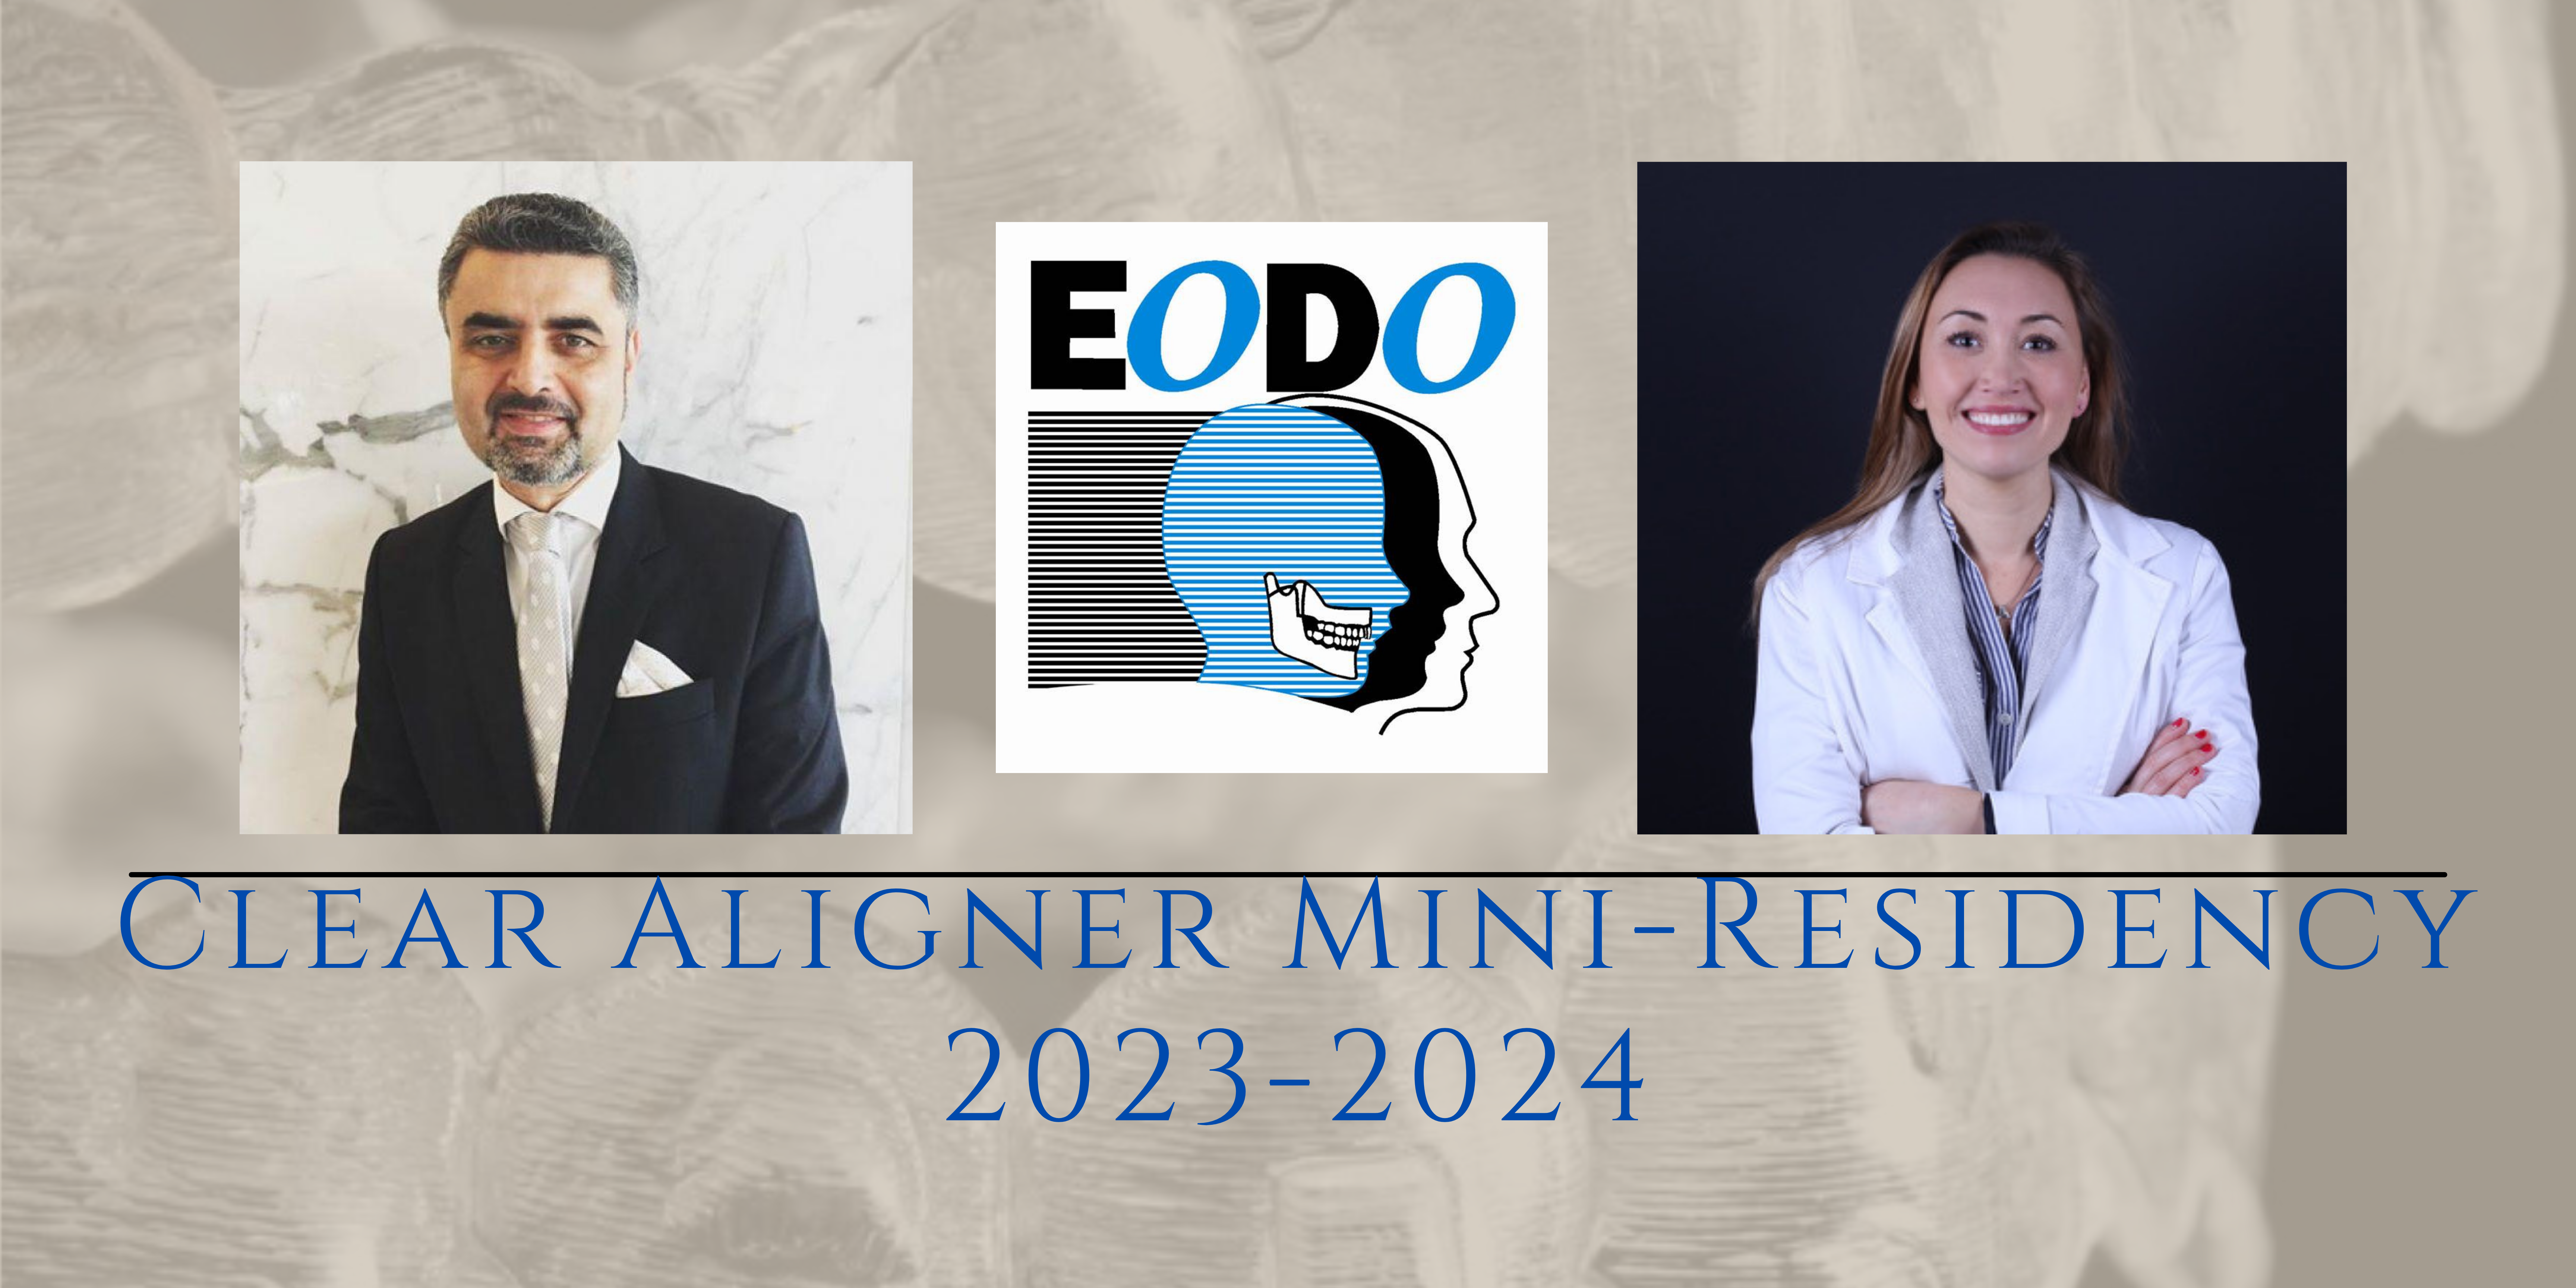 Clear Aligner Mini Residency 2023-2024-2022